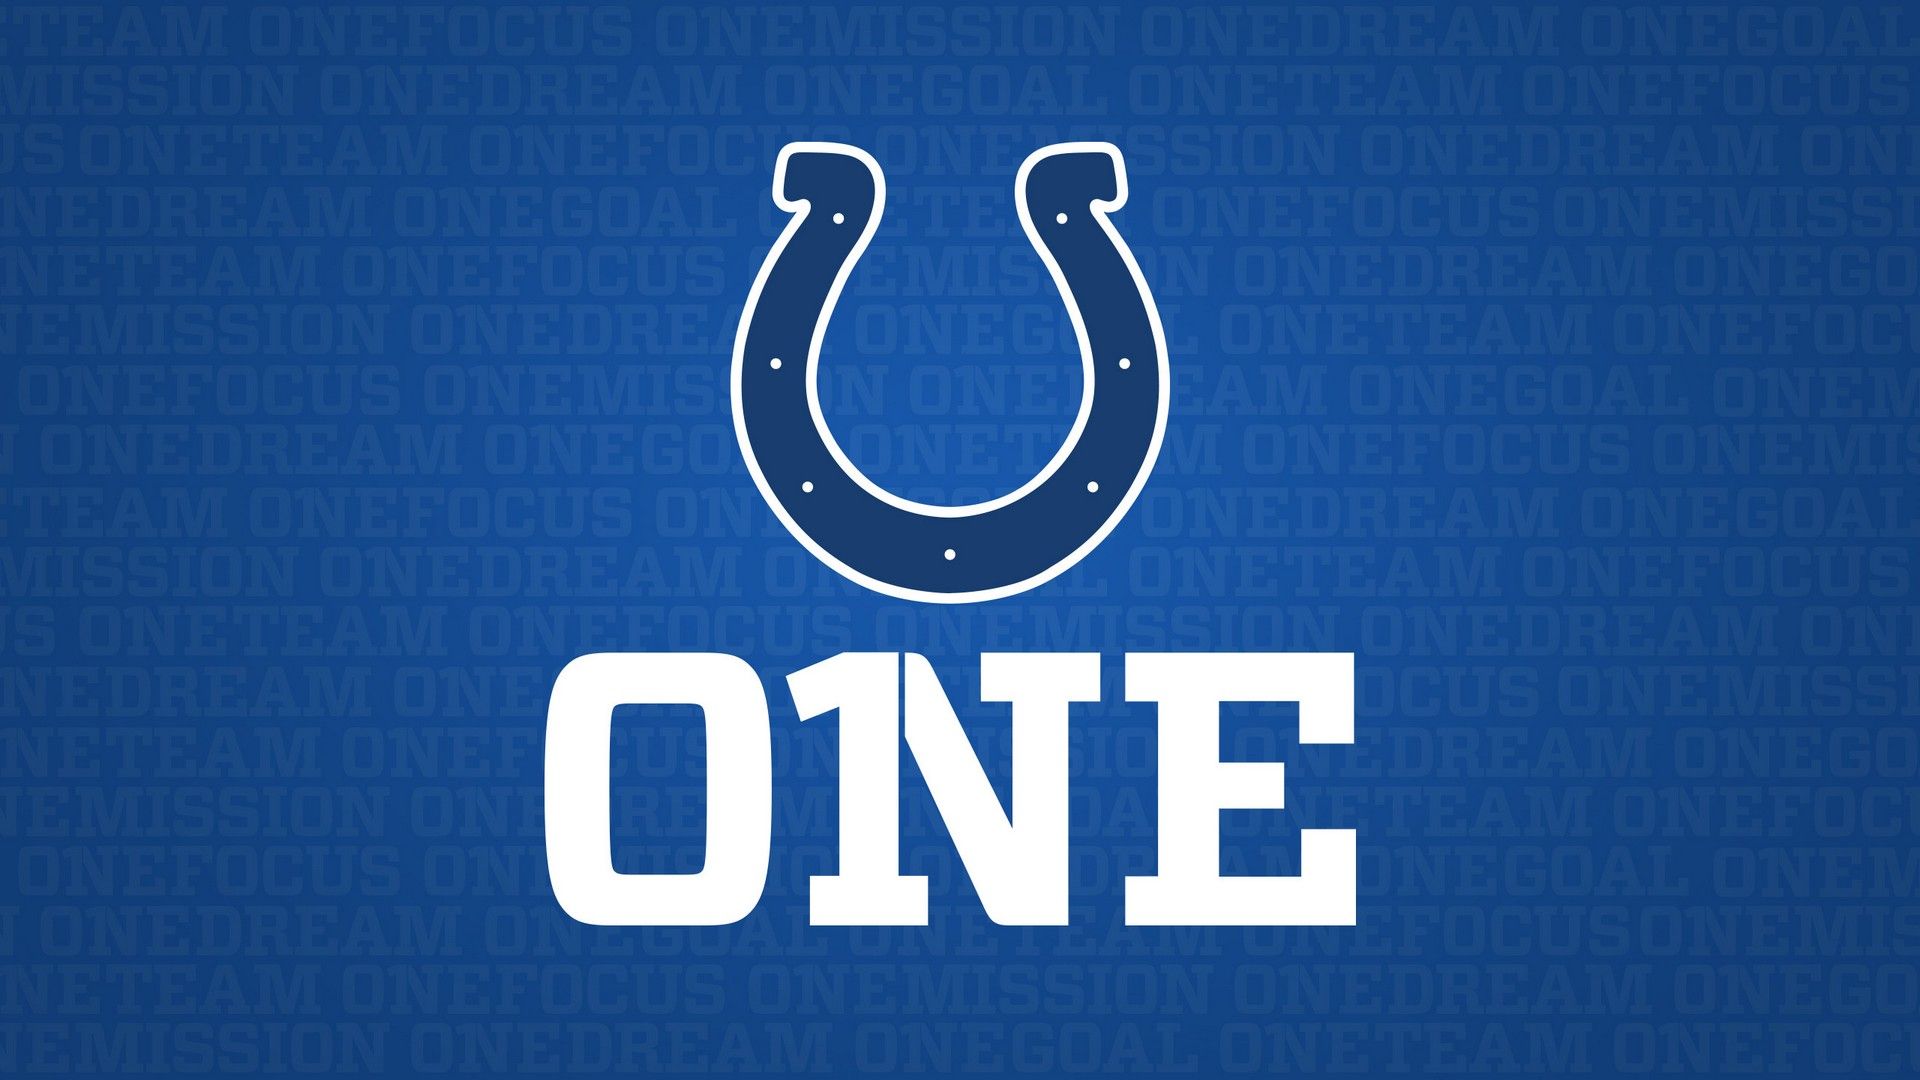 Indianapolis Colts Desktop Wallpaper. Nfl football wallpaper